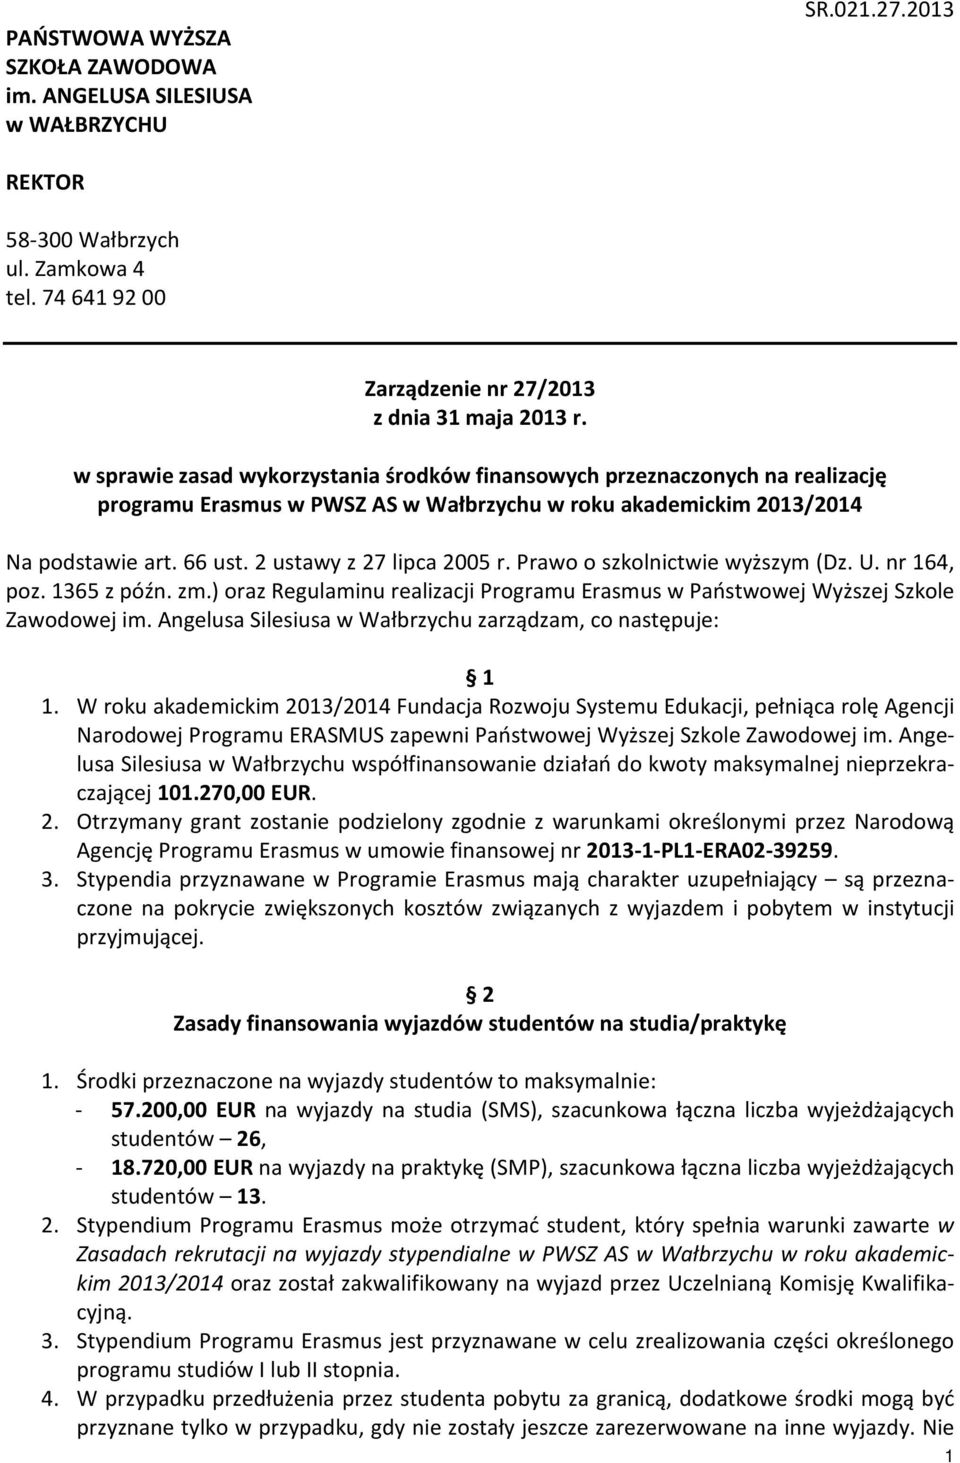 2 ustawy z 27 lipca 2005 r. Prawo o szkolnictwie wyższym (Dz. U. nr 164, poz. 1365 z późn. zm.) oraz Regulaminu realizacji Programu Erasmus w Państwowej Wyższej Szkole Zawodowej im.